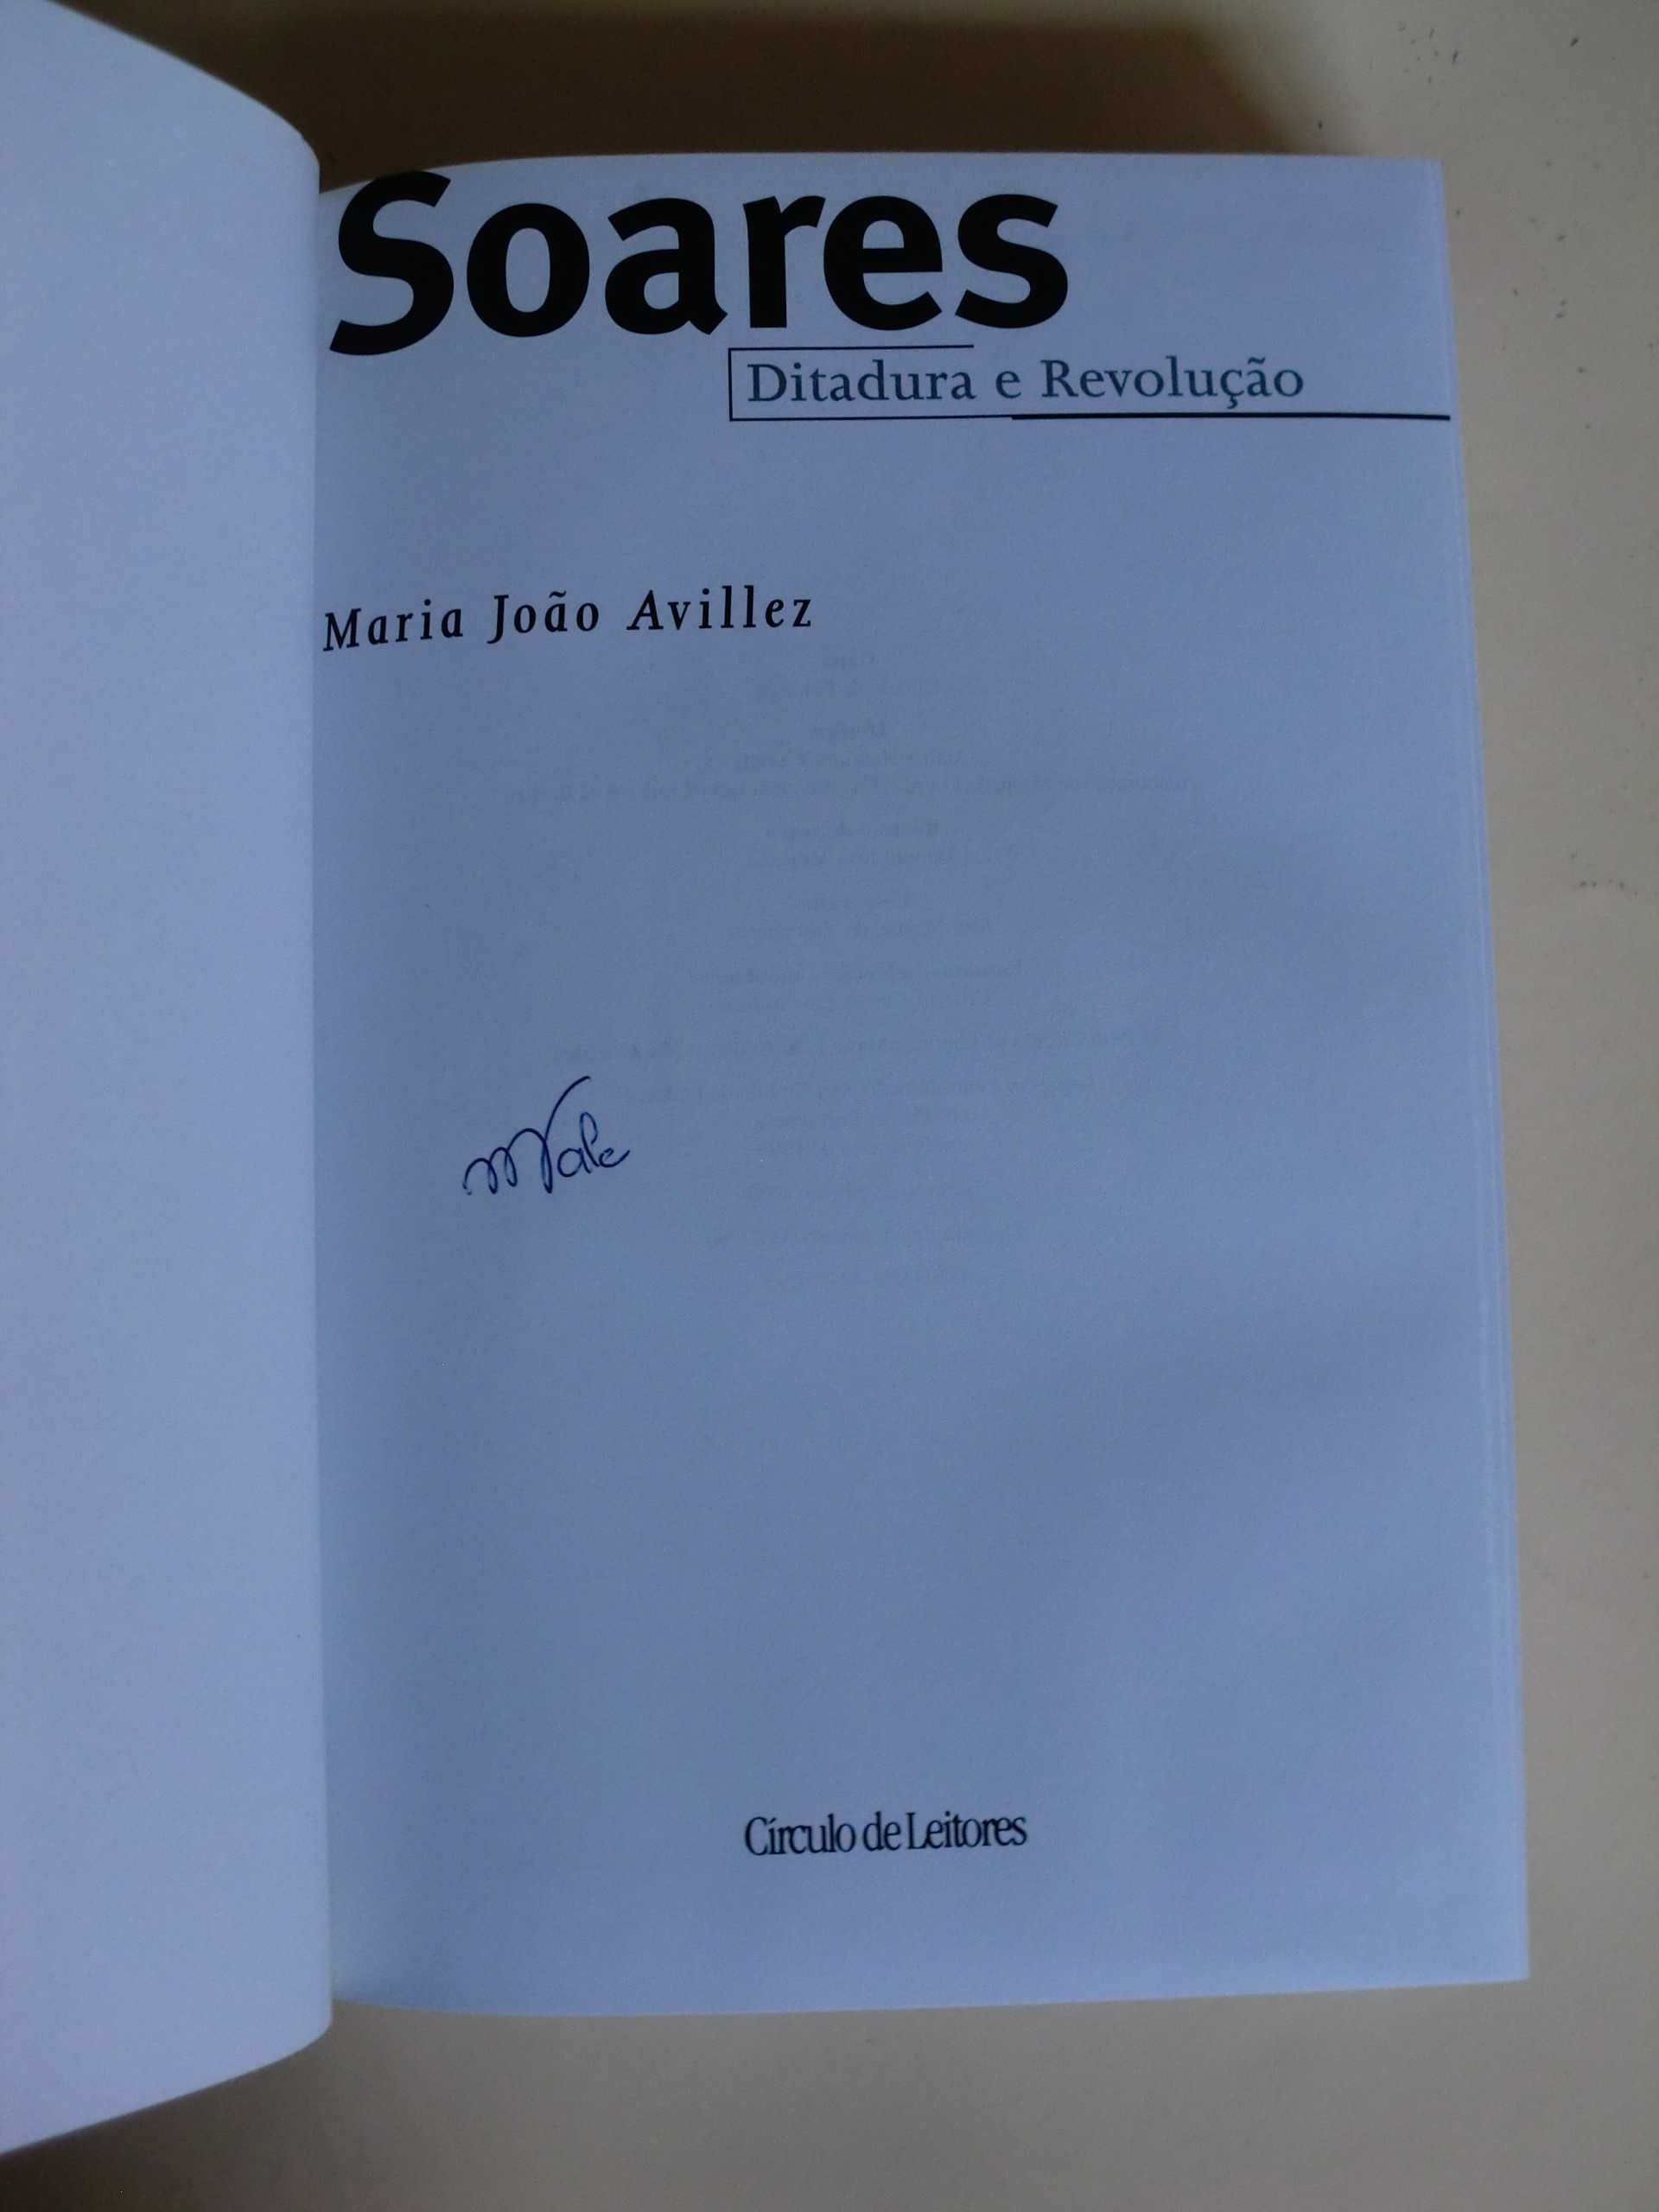 Soares - Ditadura e Revolução
de Maria João Avillez